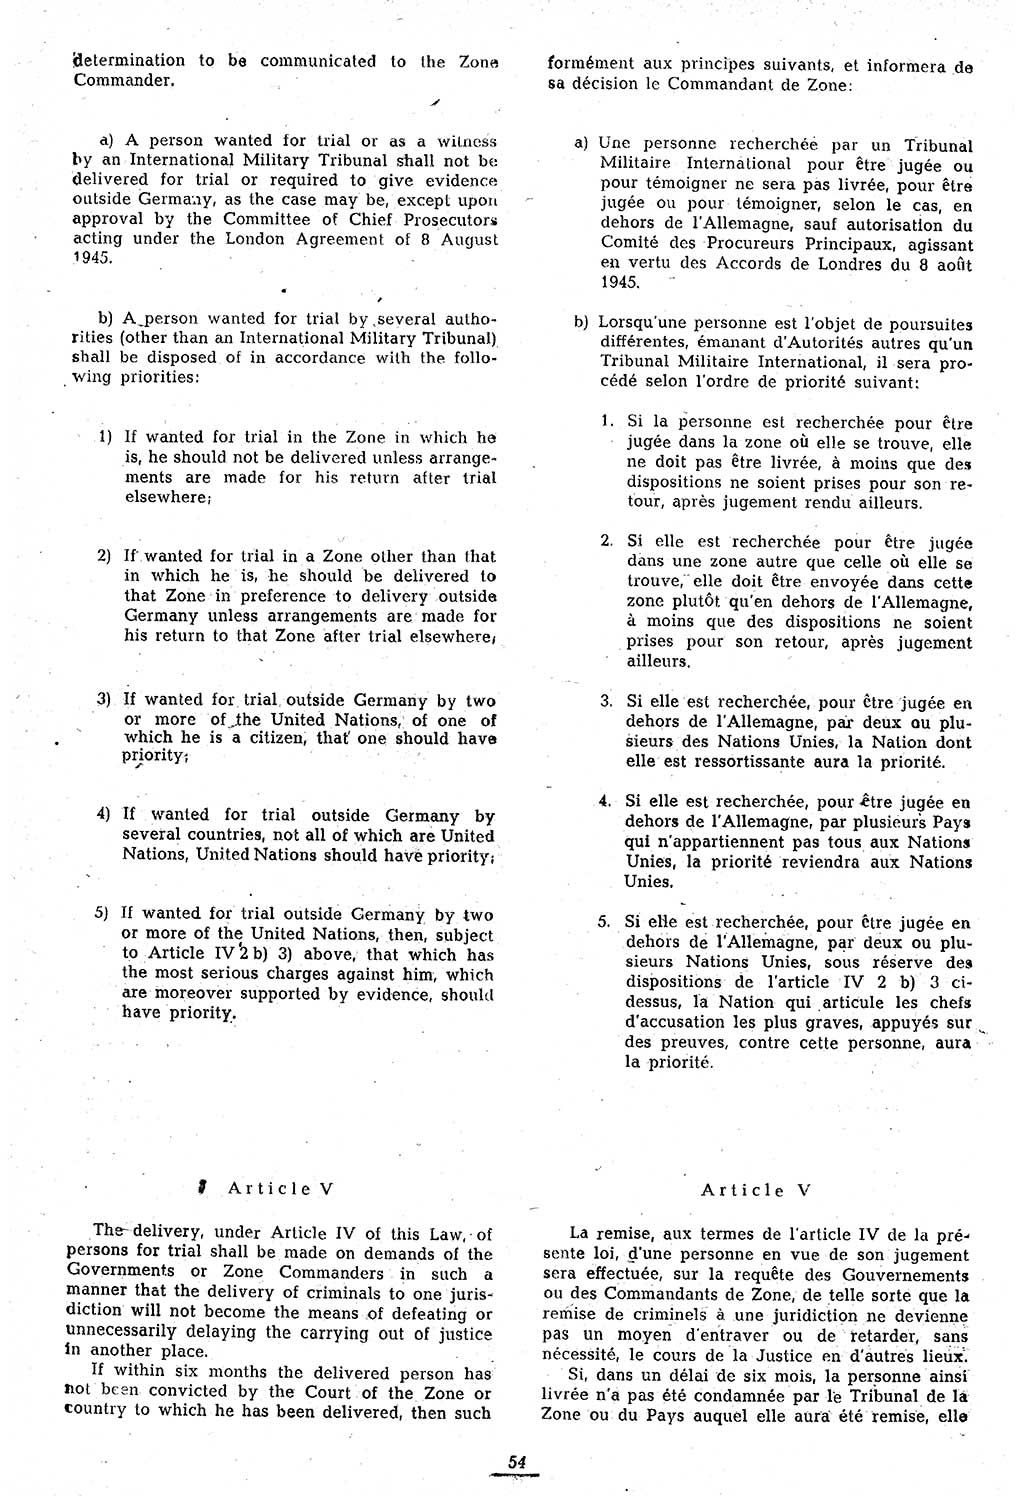 Amtsblatt des Kontrollrats (ABlKR) in Deutschland 1946, Seite 54/1 (ABlKR Dtl. 1946, S. 54/1)